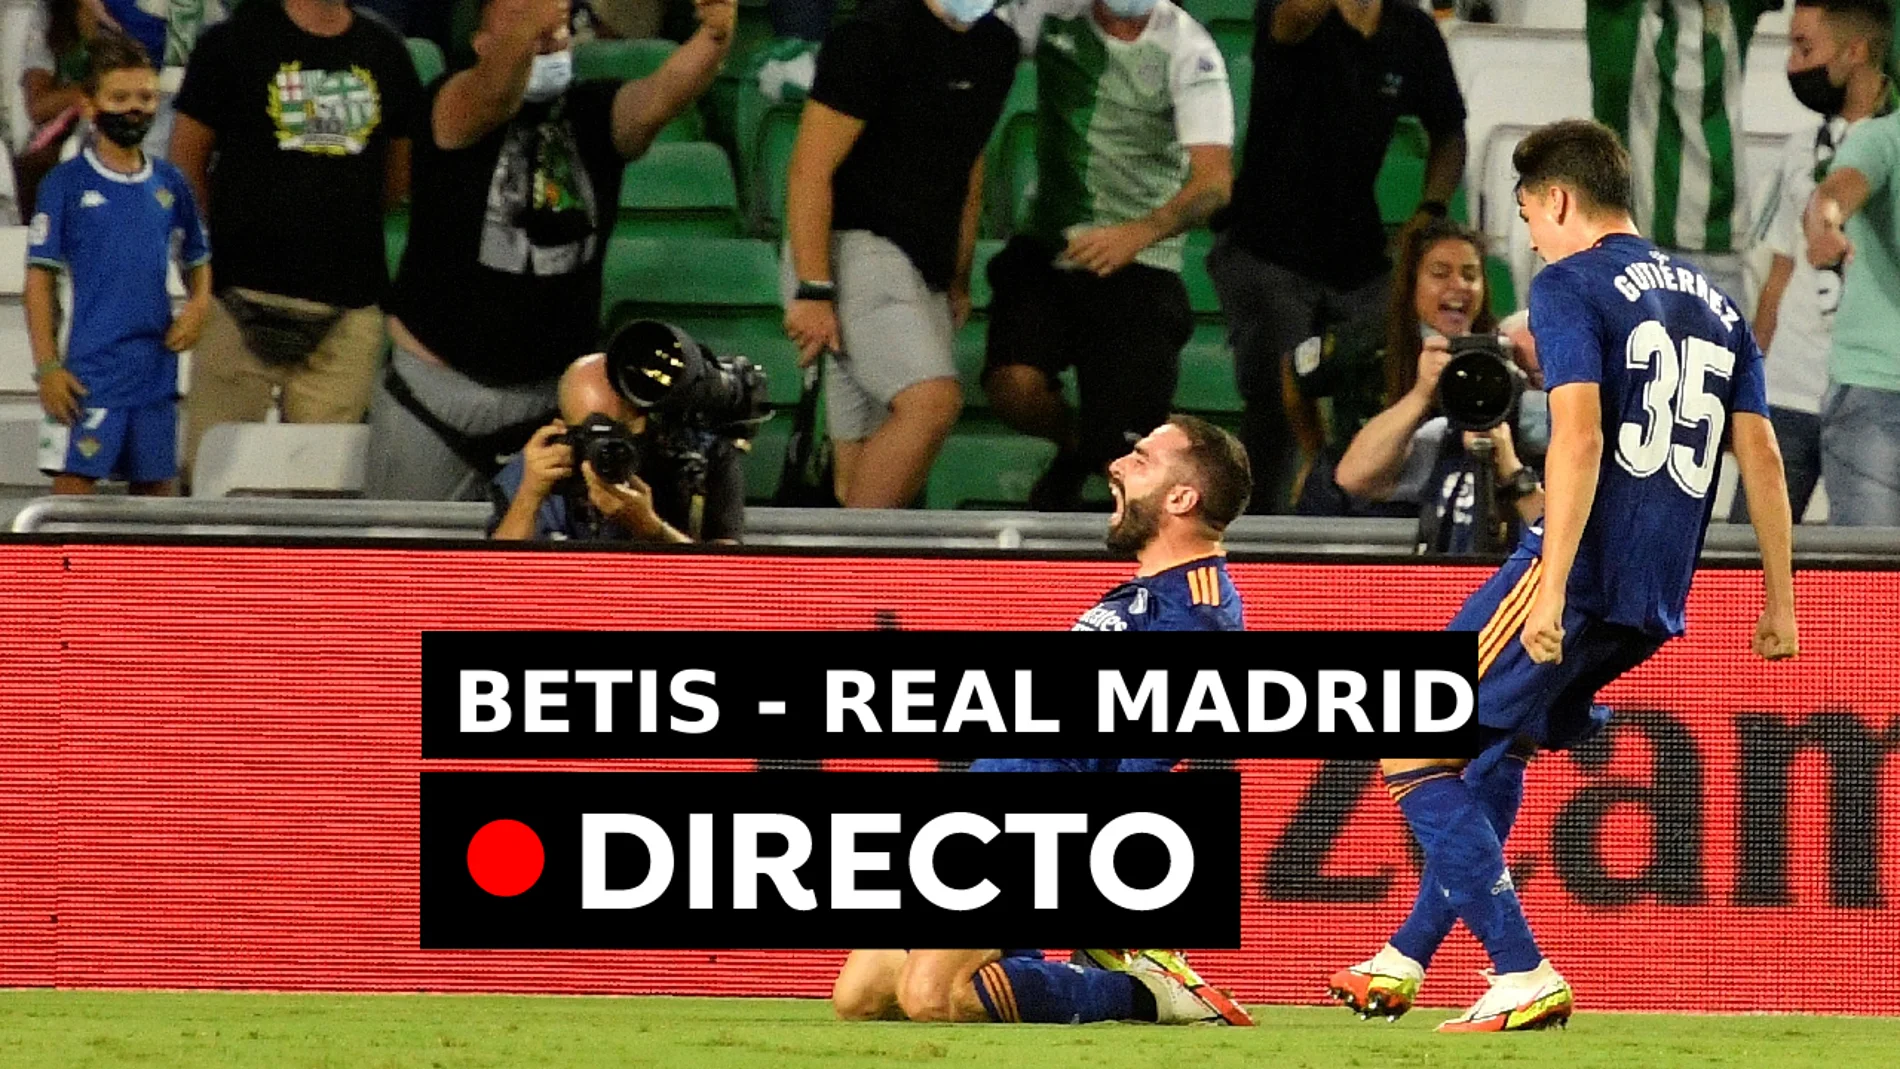 Betis - Real Madrid: Resultado y goles, en directo (0-1)